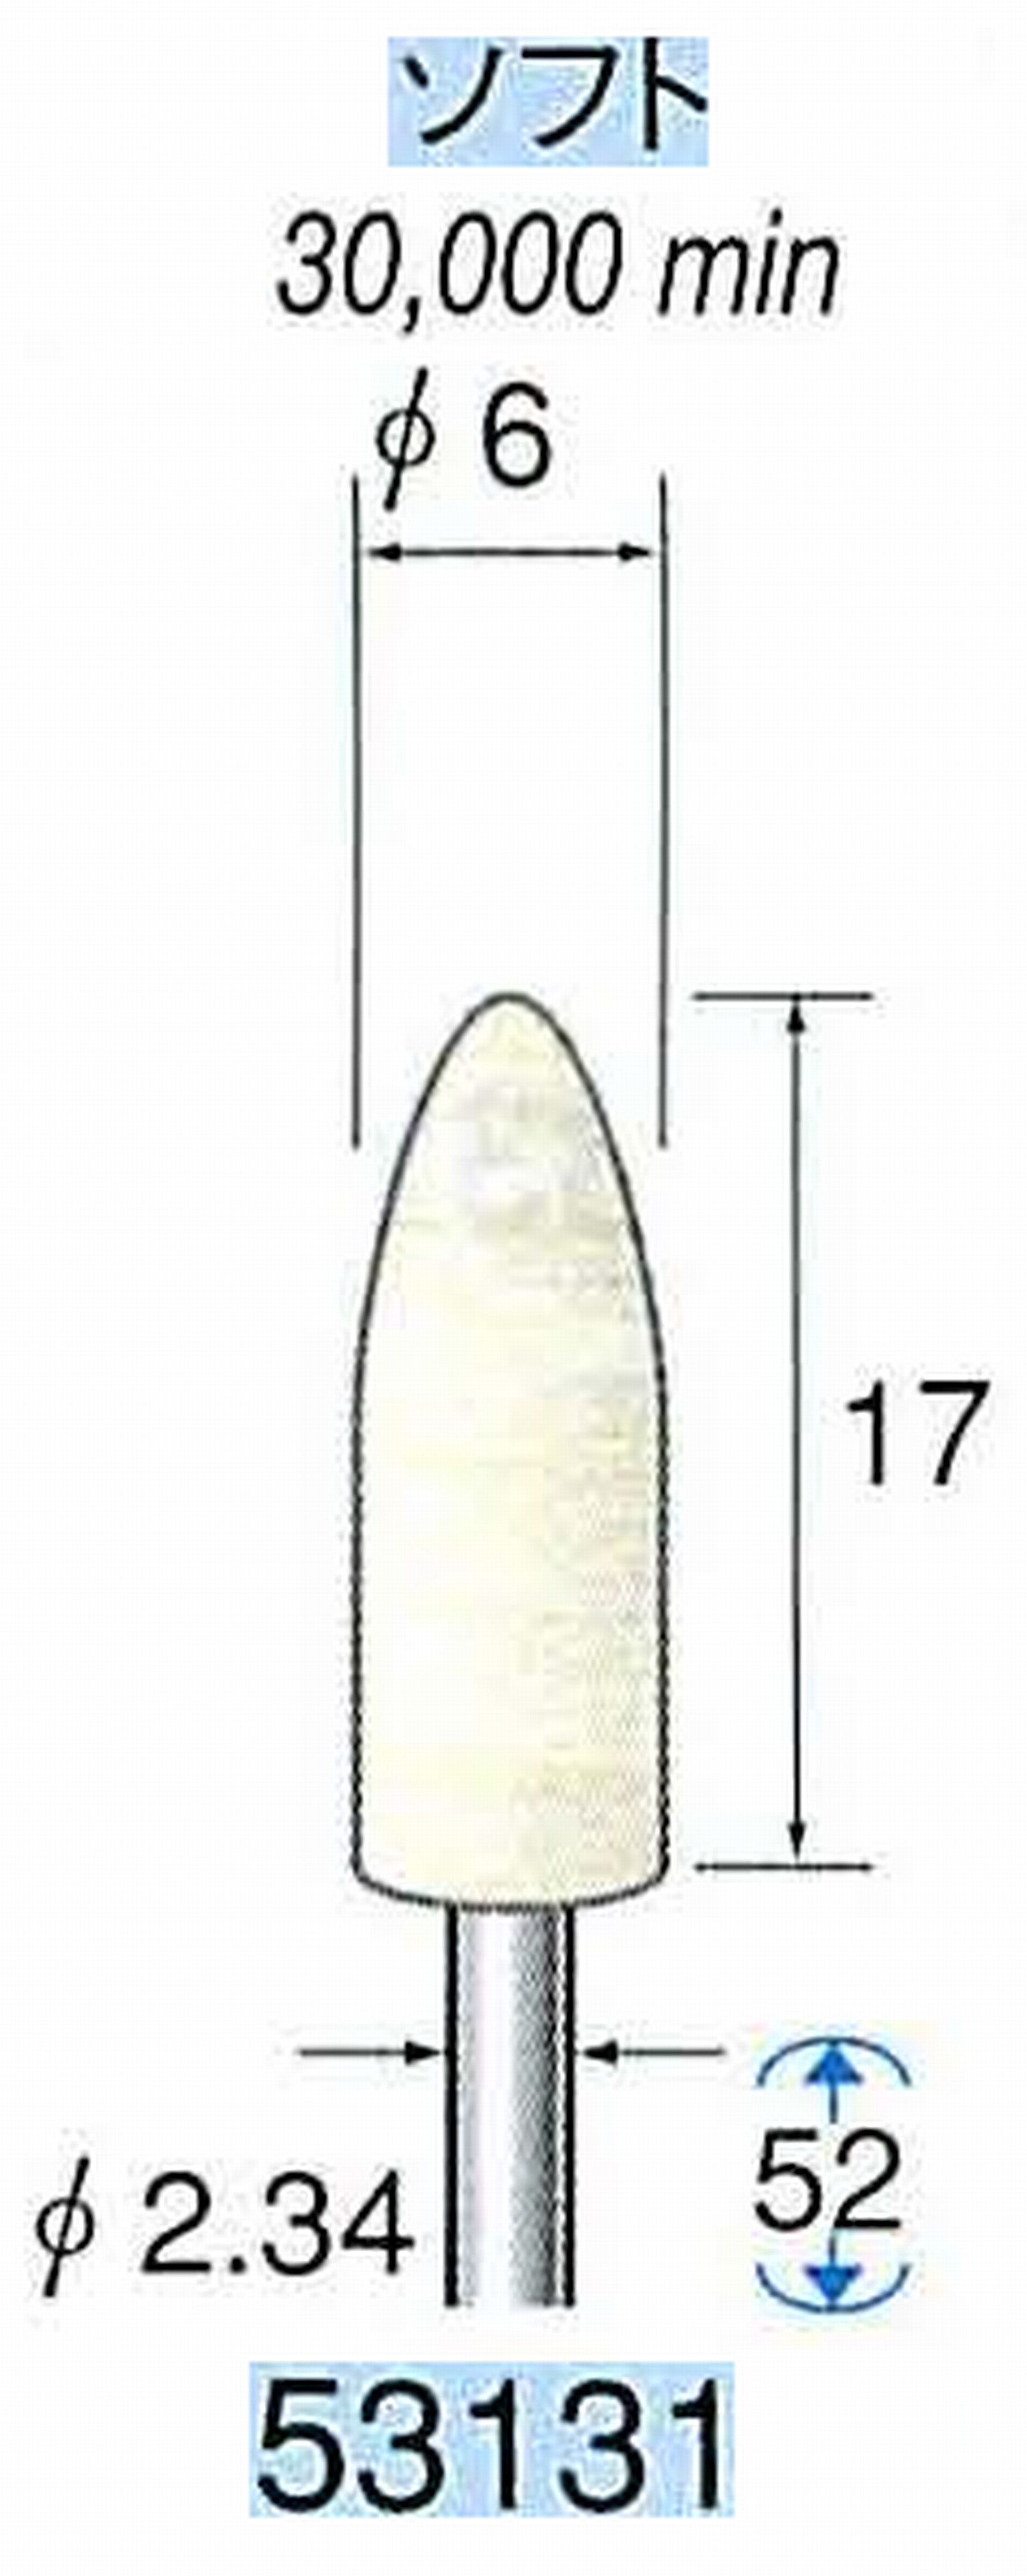 ナカニシ/NAKANISHI フェルトバフ ソフト 軸径(シャンク)φ2.34mm 53131